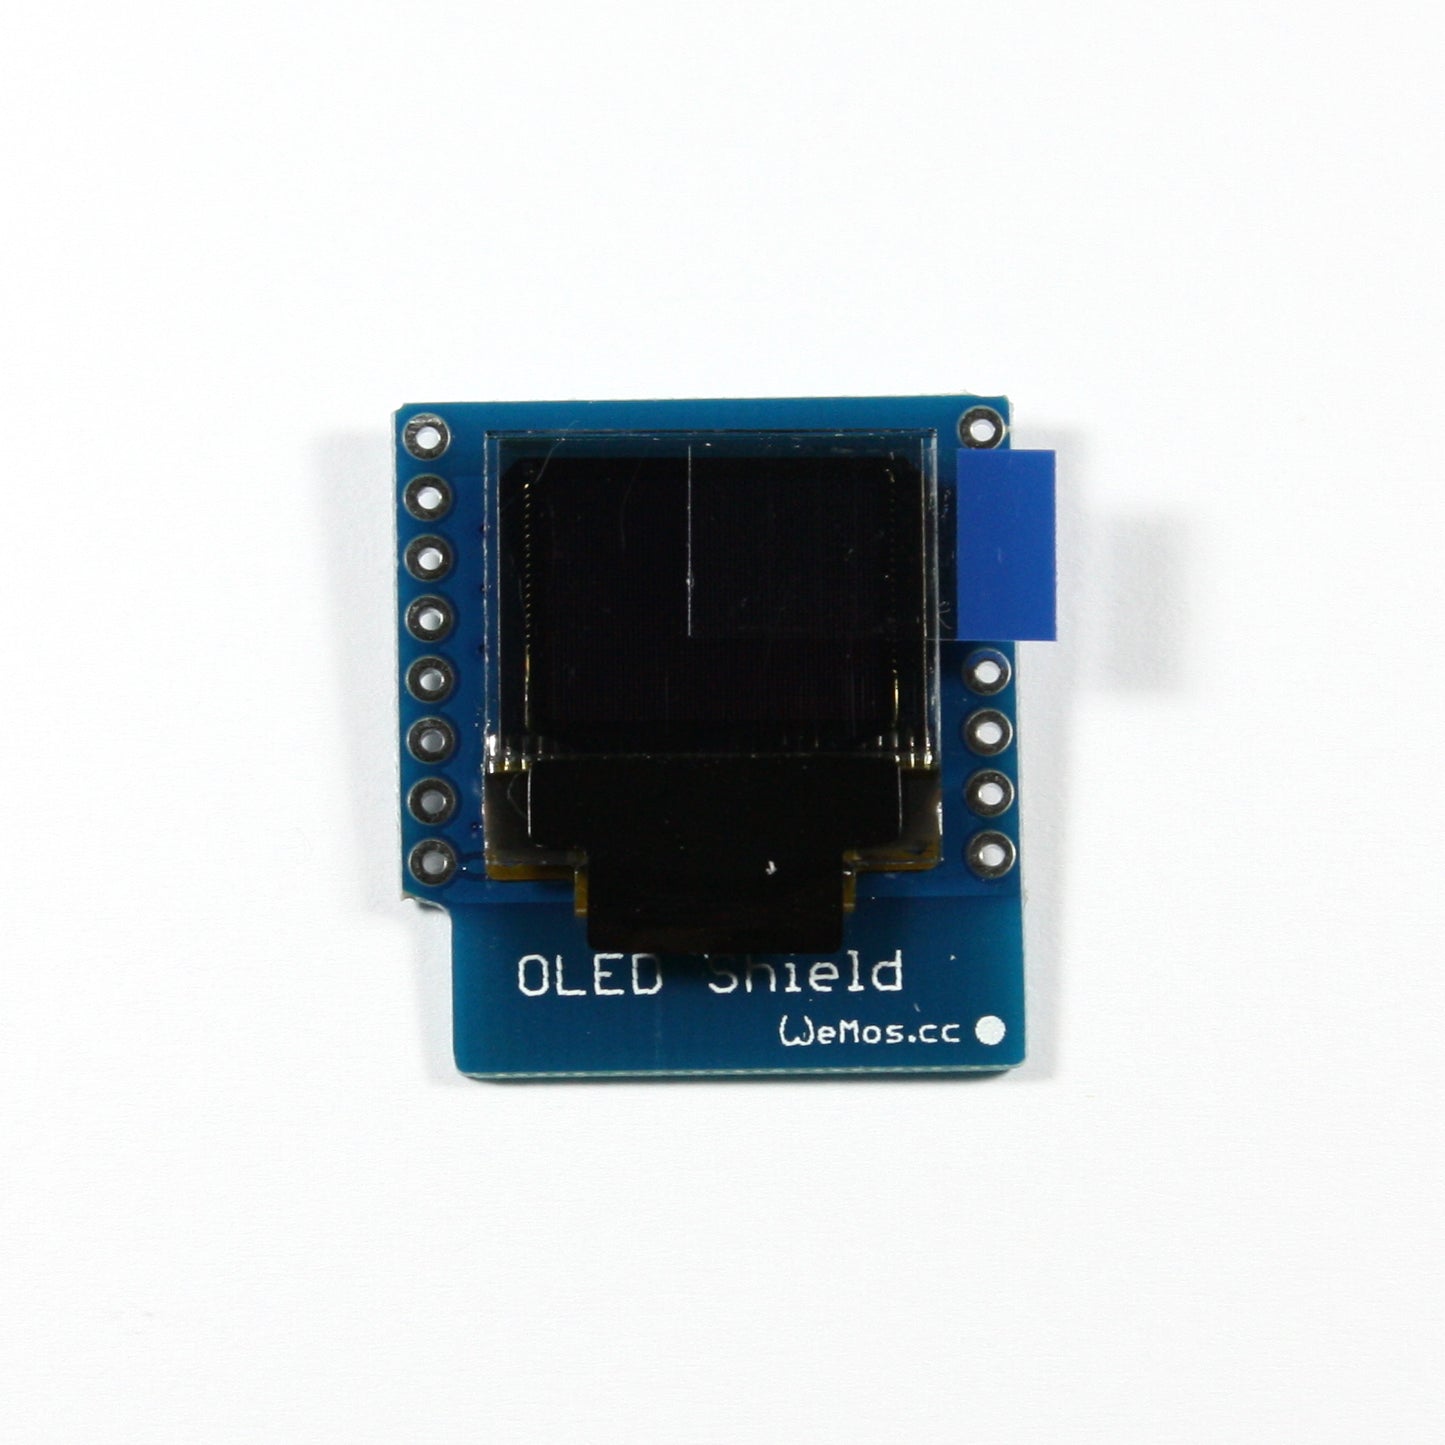 OLED Shield mit 64x48 Pixel-Display für WeMos D1 mini